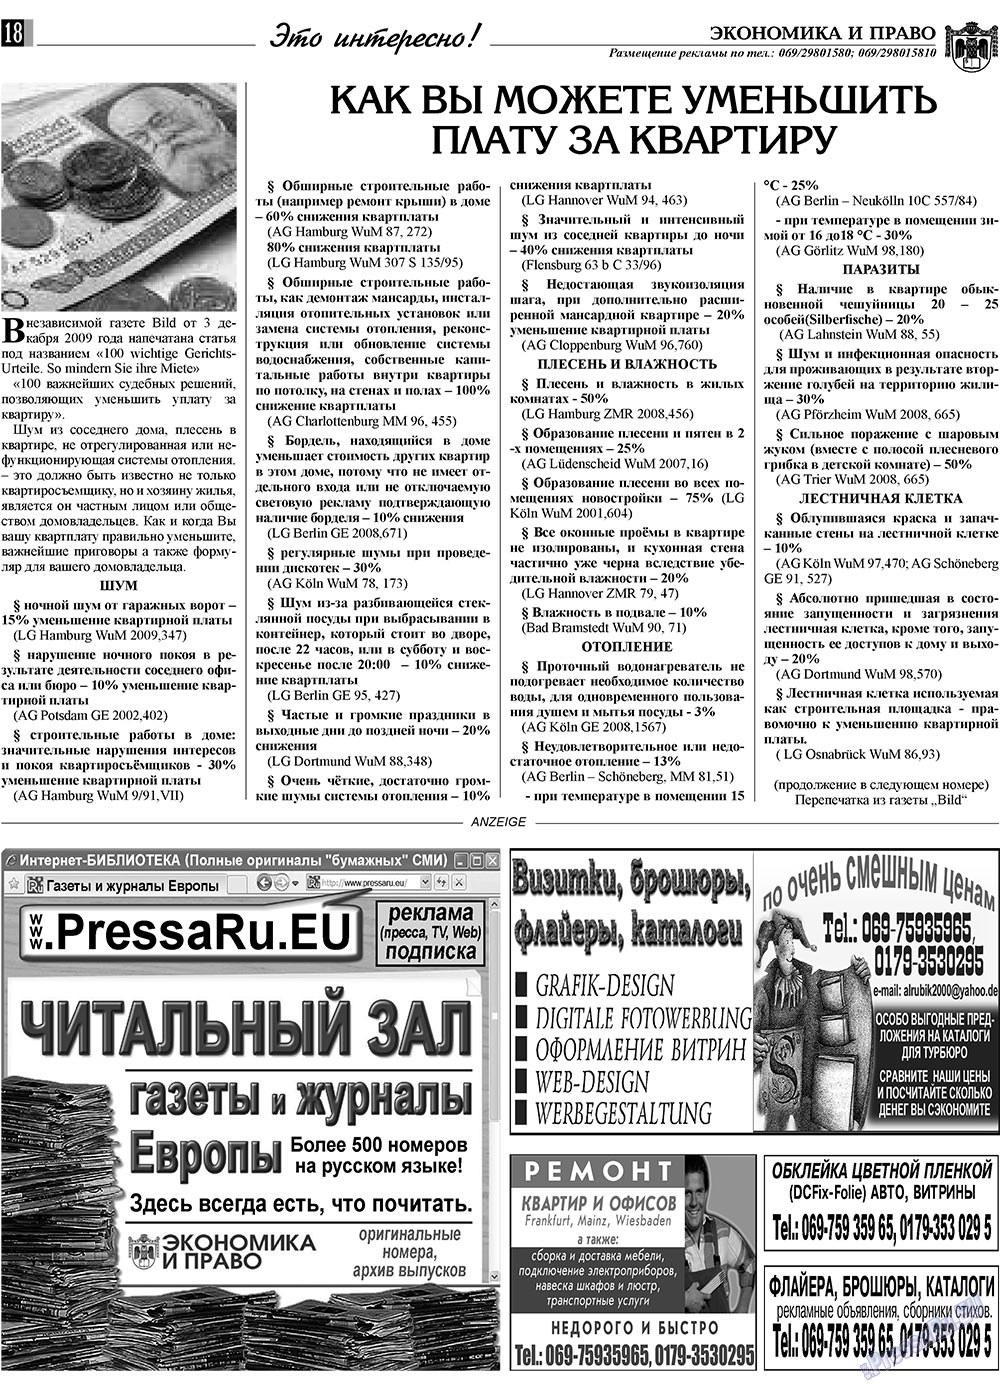 Экономика и право, газета. 2010 №1 стр.18